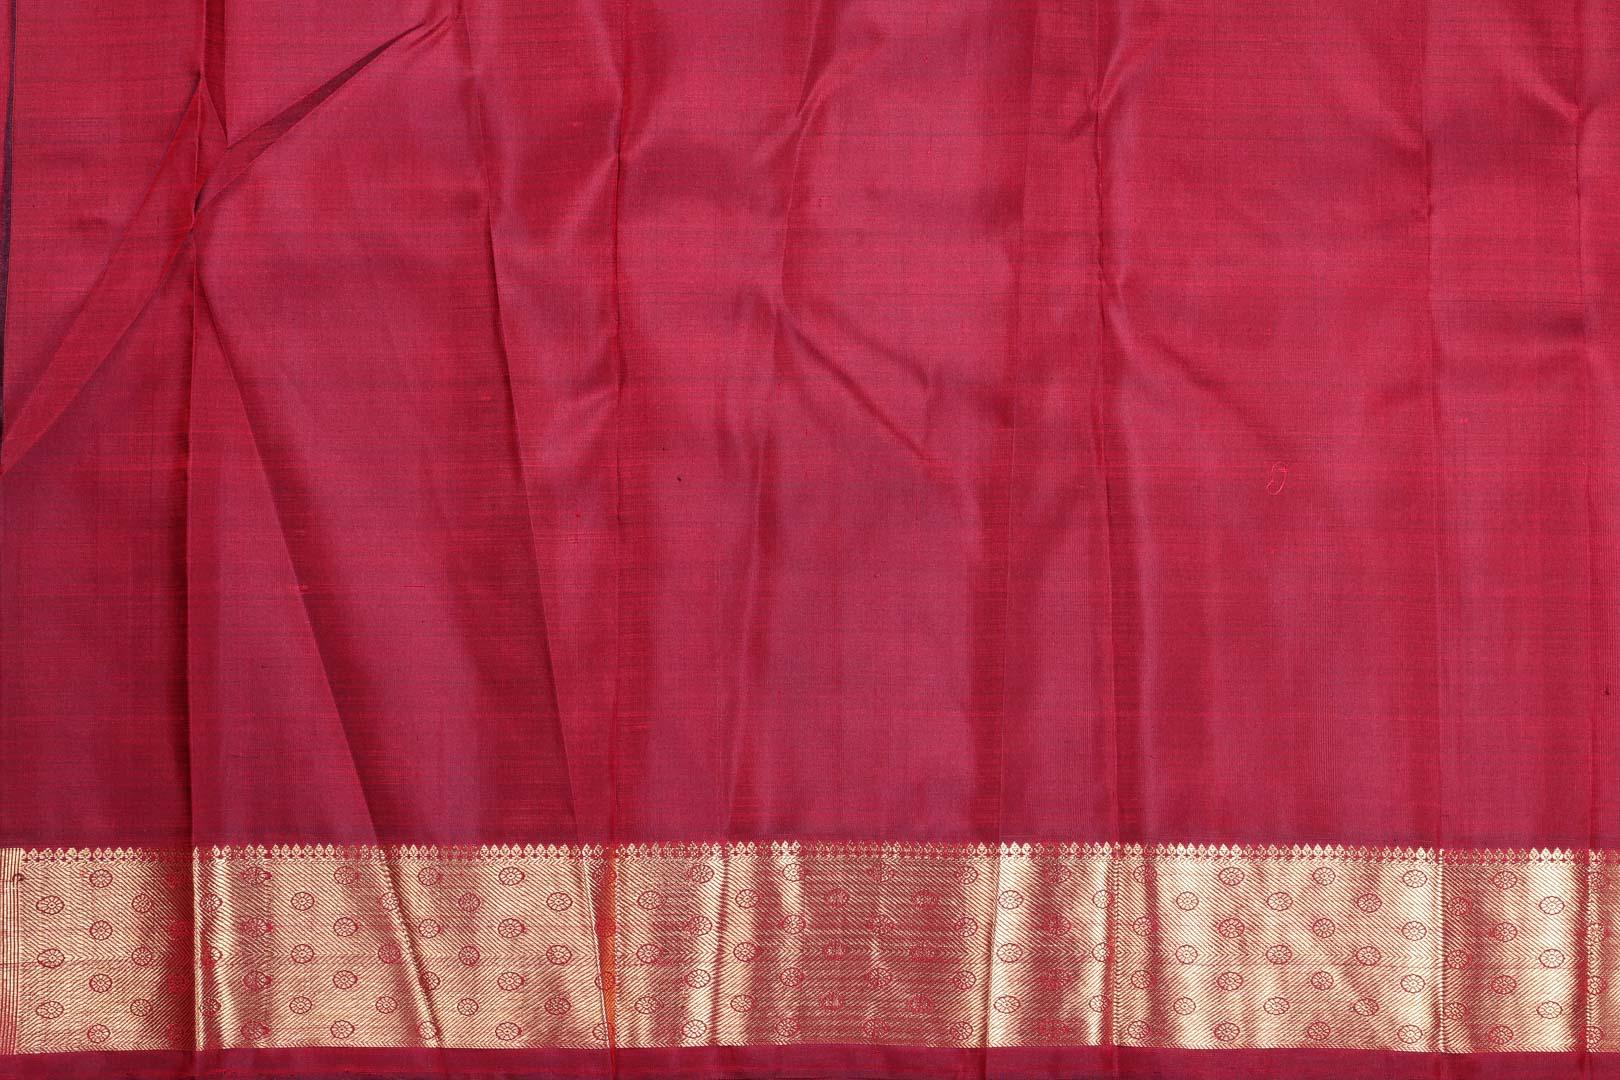 Panjavarnam Kanjivaram SIlk Saree PVM 0318 1158 - Silk Sari - Panjavarnam